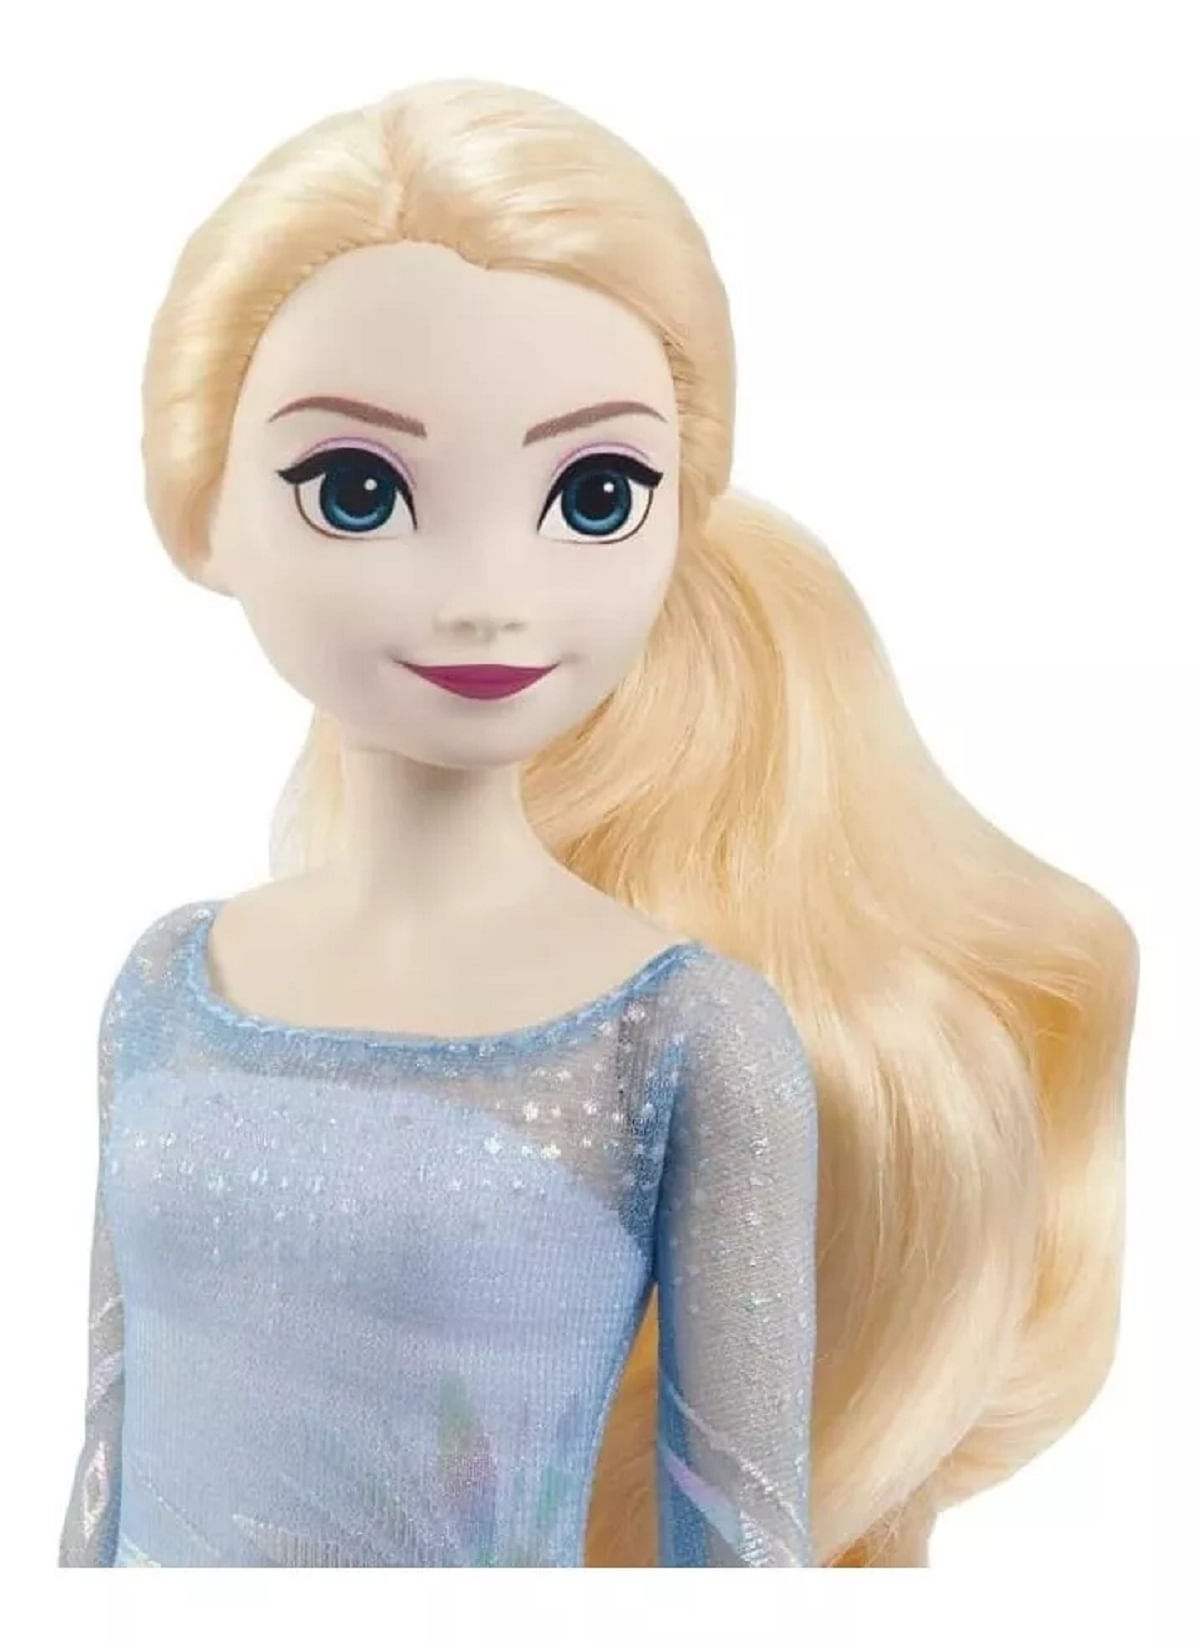 Boneca Frozen Carrinho de Doces da Elsa e do Olaf - Bumerang